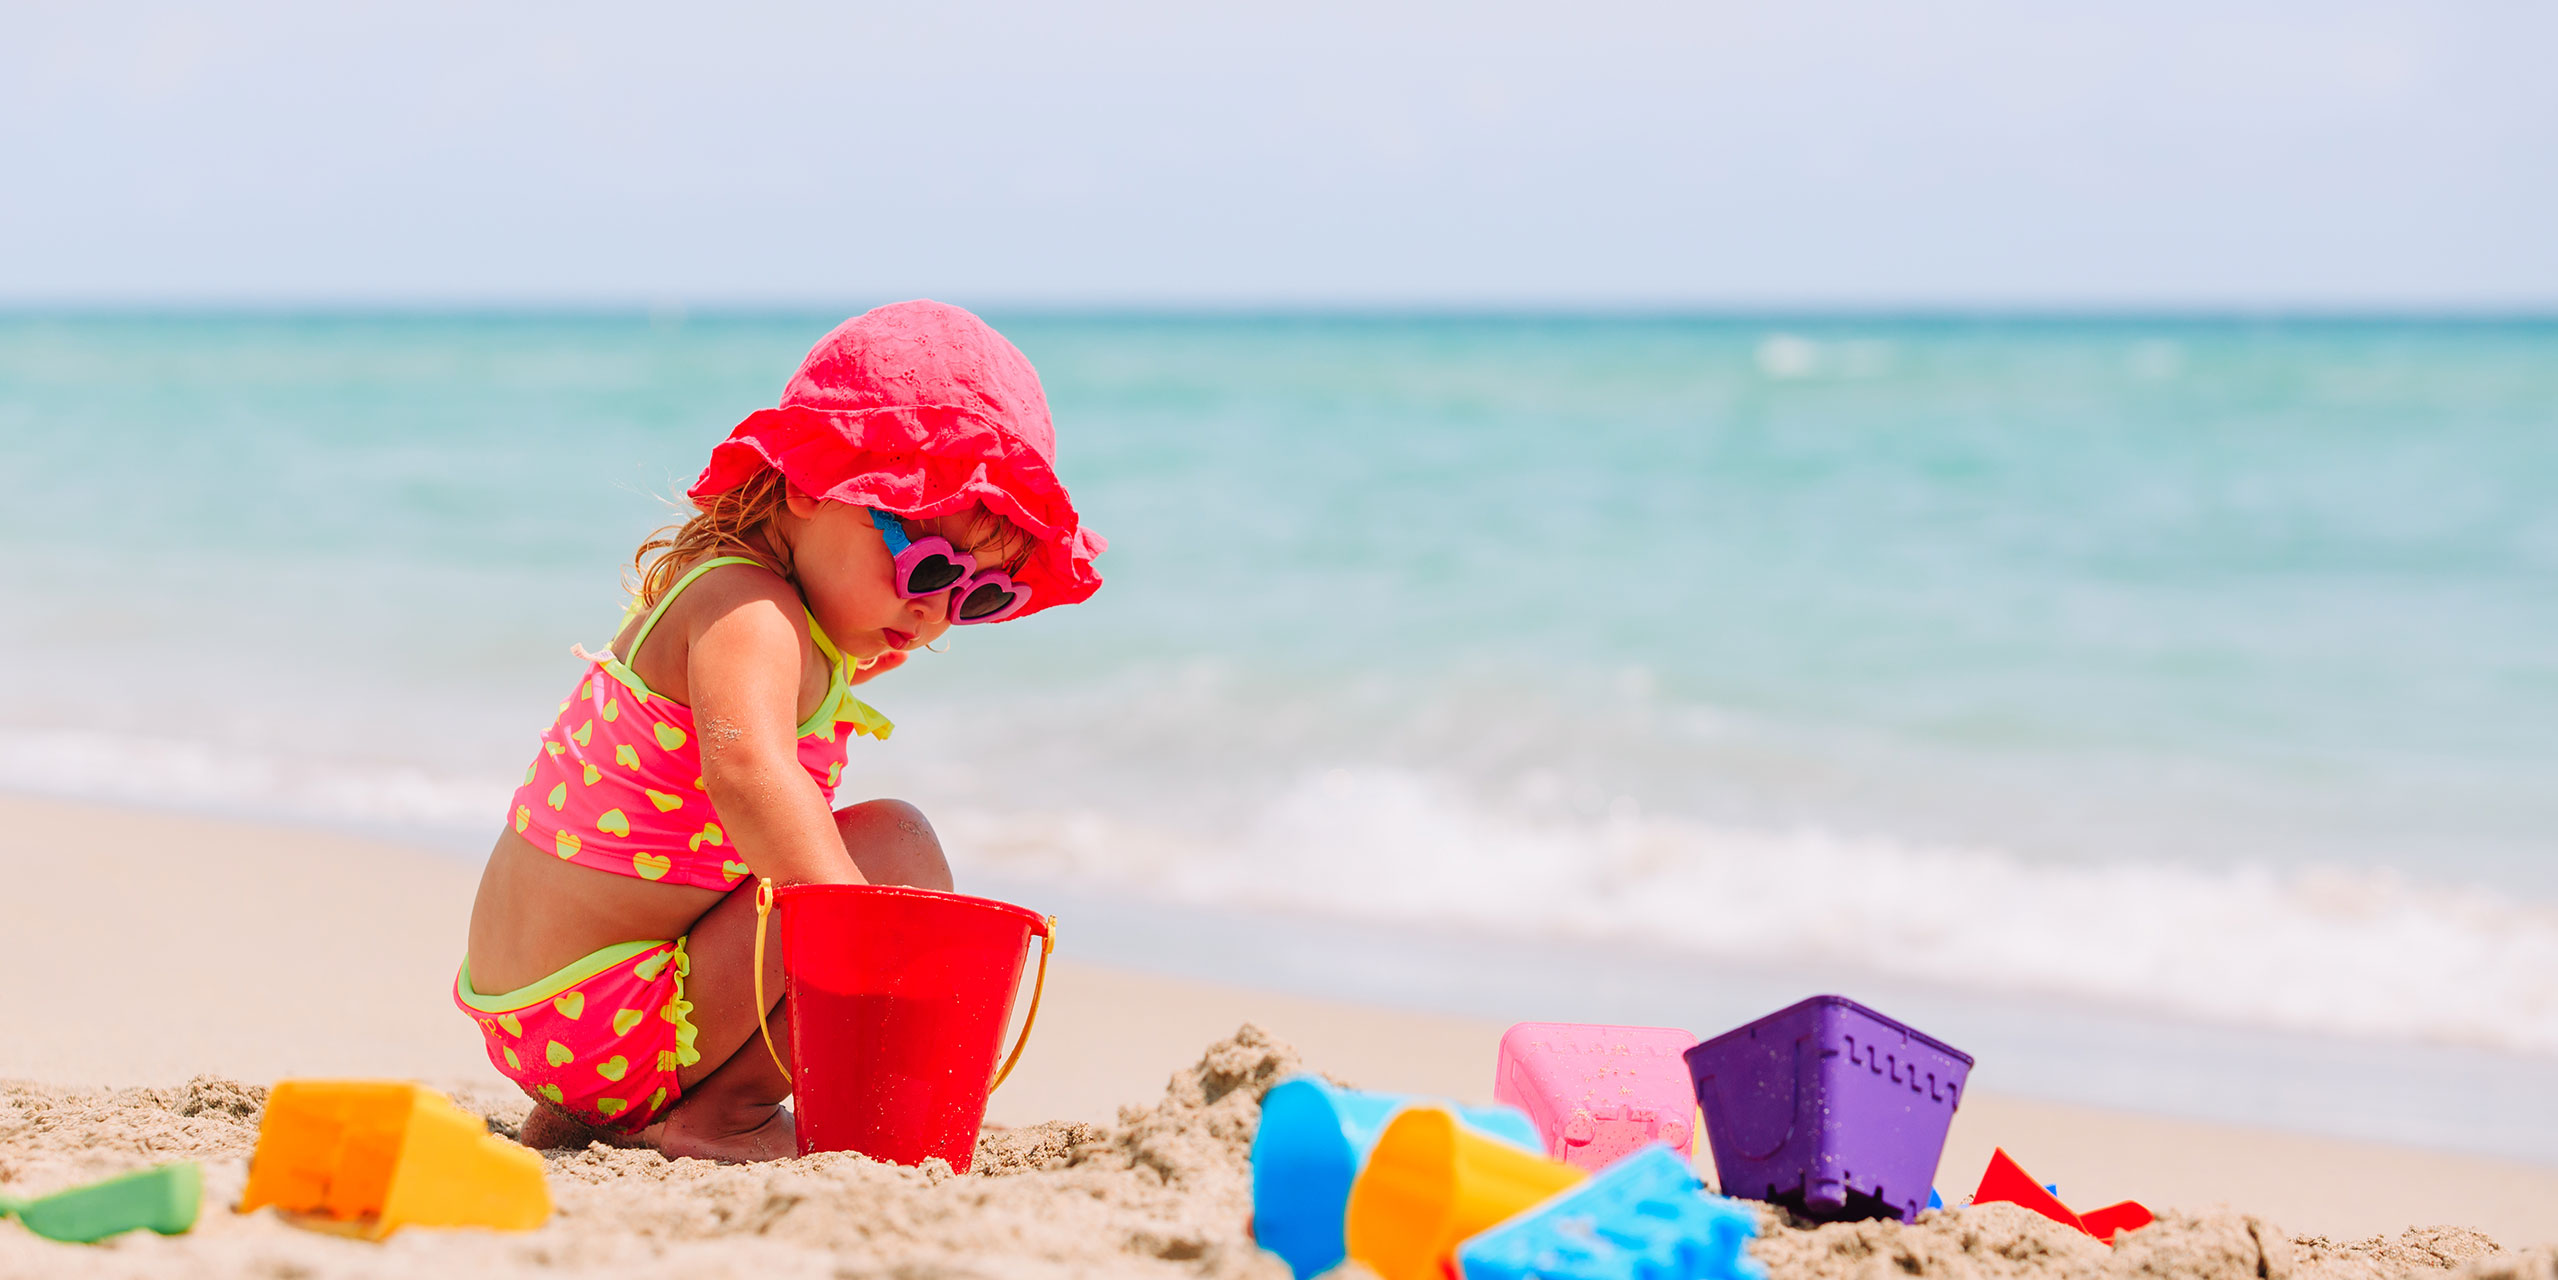 Little Girl Playing on Beach; Courtesy of NadyaEugene/Shutterstock.com